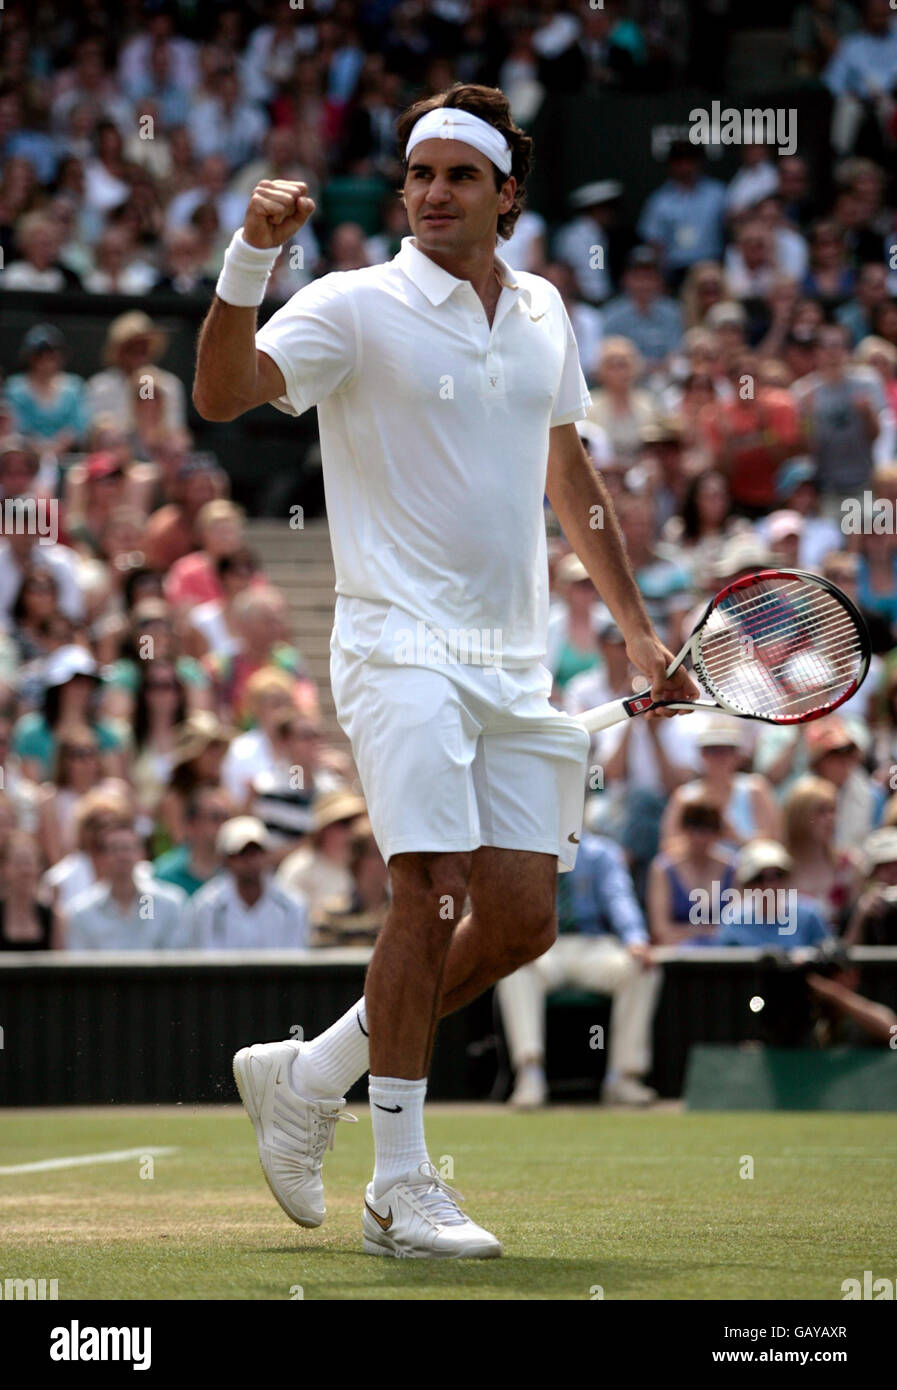 Roger Federer, in Svizzera, celebra la vittoria contro la Leyton Hewitt australiana durante i Campionati Wimbledon 2008 presso l'All England Tennis Club di Wimbledon. Foto Stock